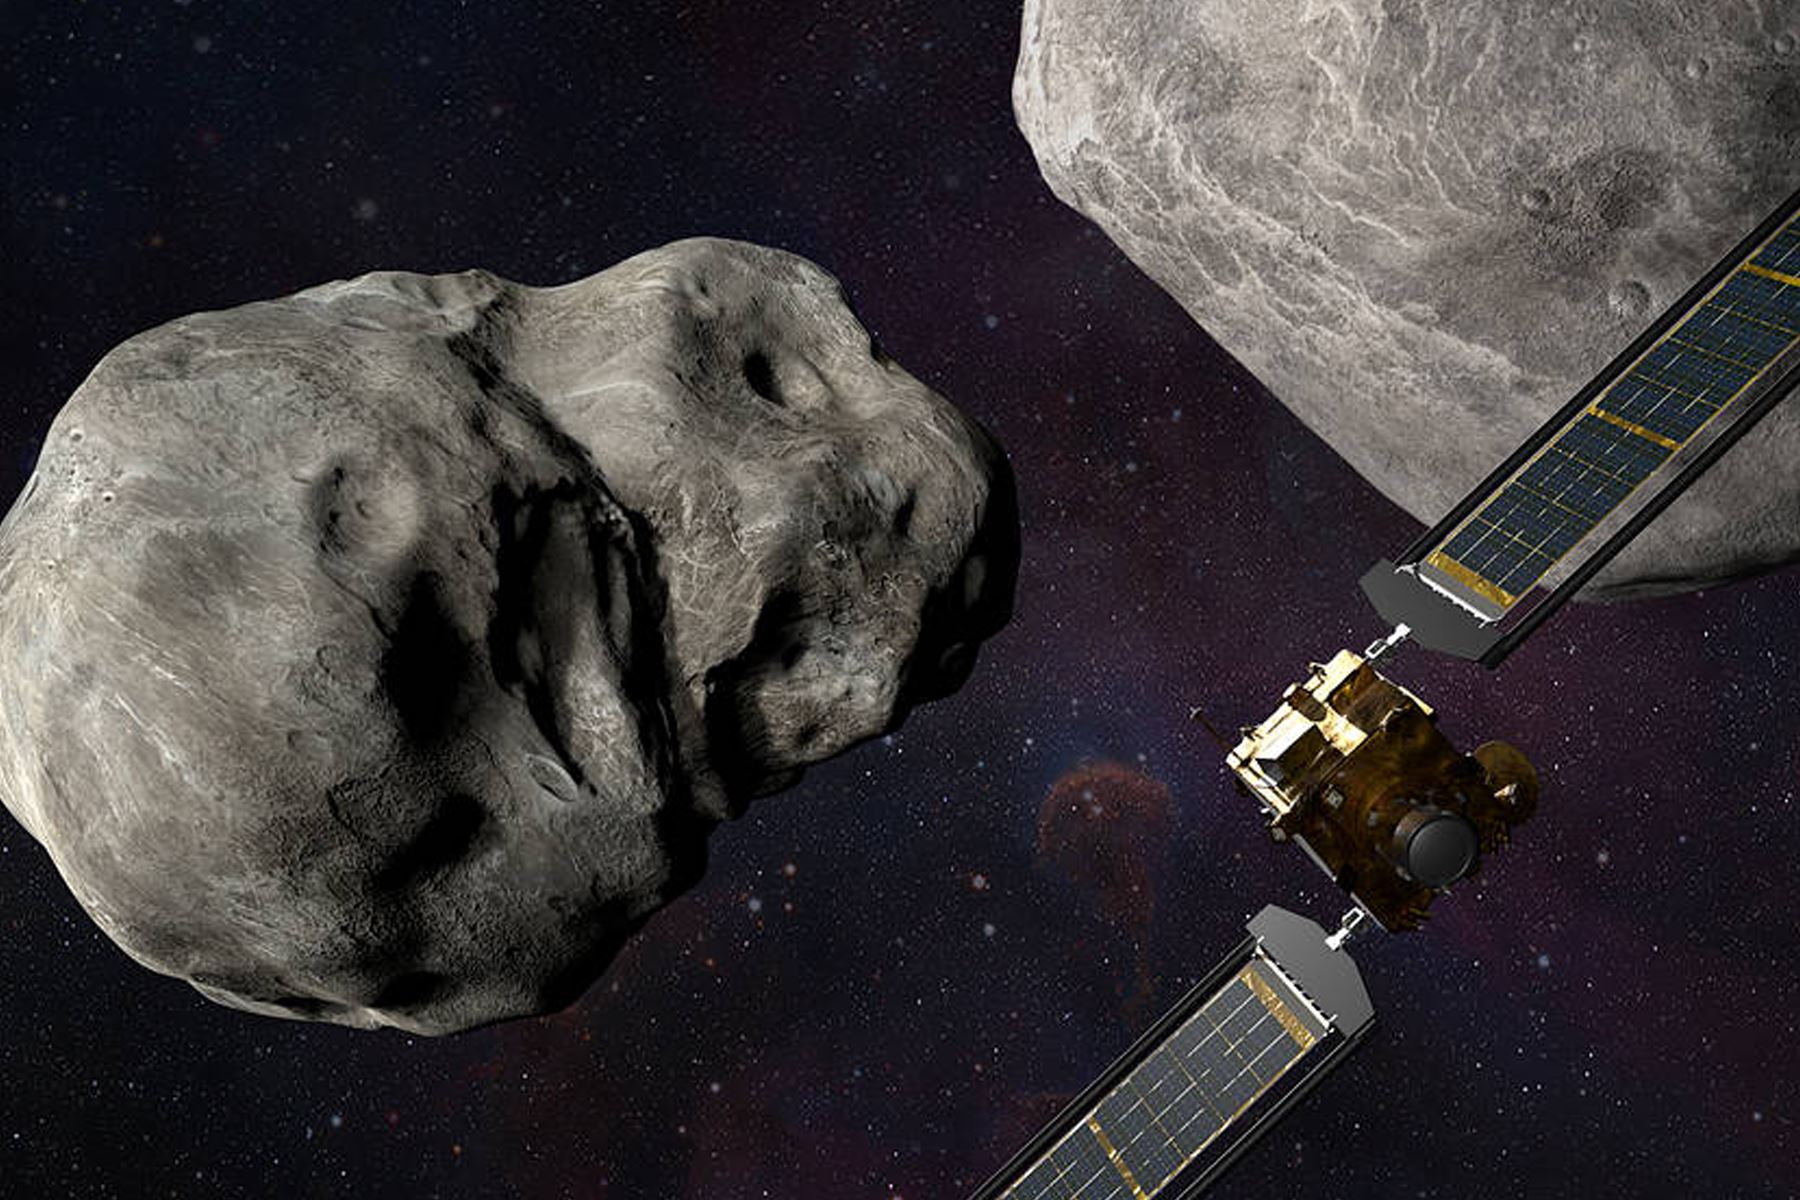 El Double Asteroid Redirection Test (DART) ayudará a determinar si estrellar intencionalmente una nave espacial contra un asteroide es una forma efectiva de cambiar su curso.  Foto: NASA